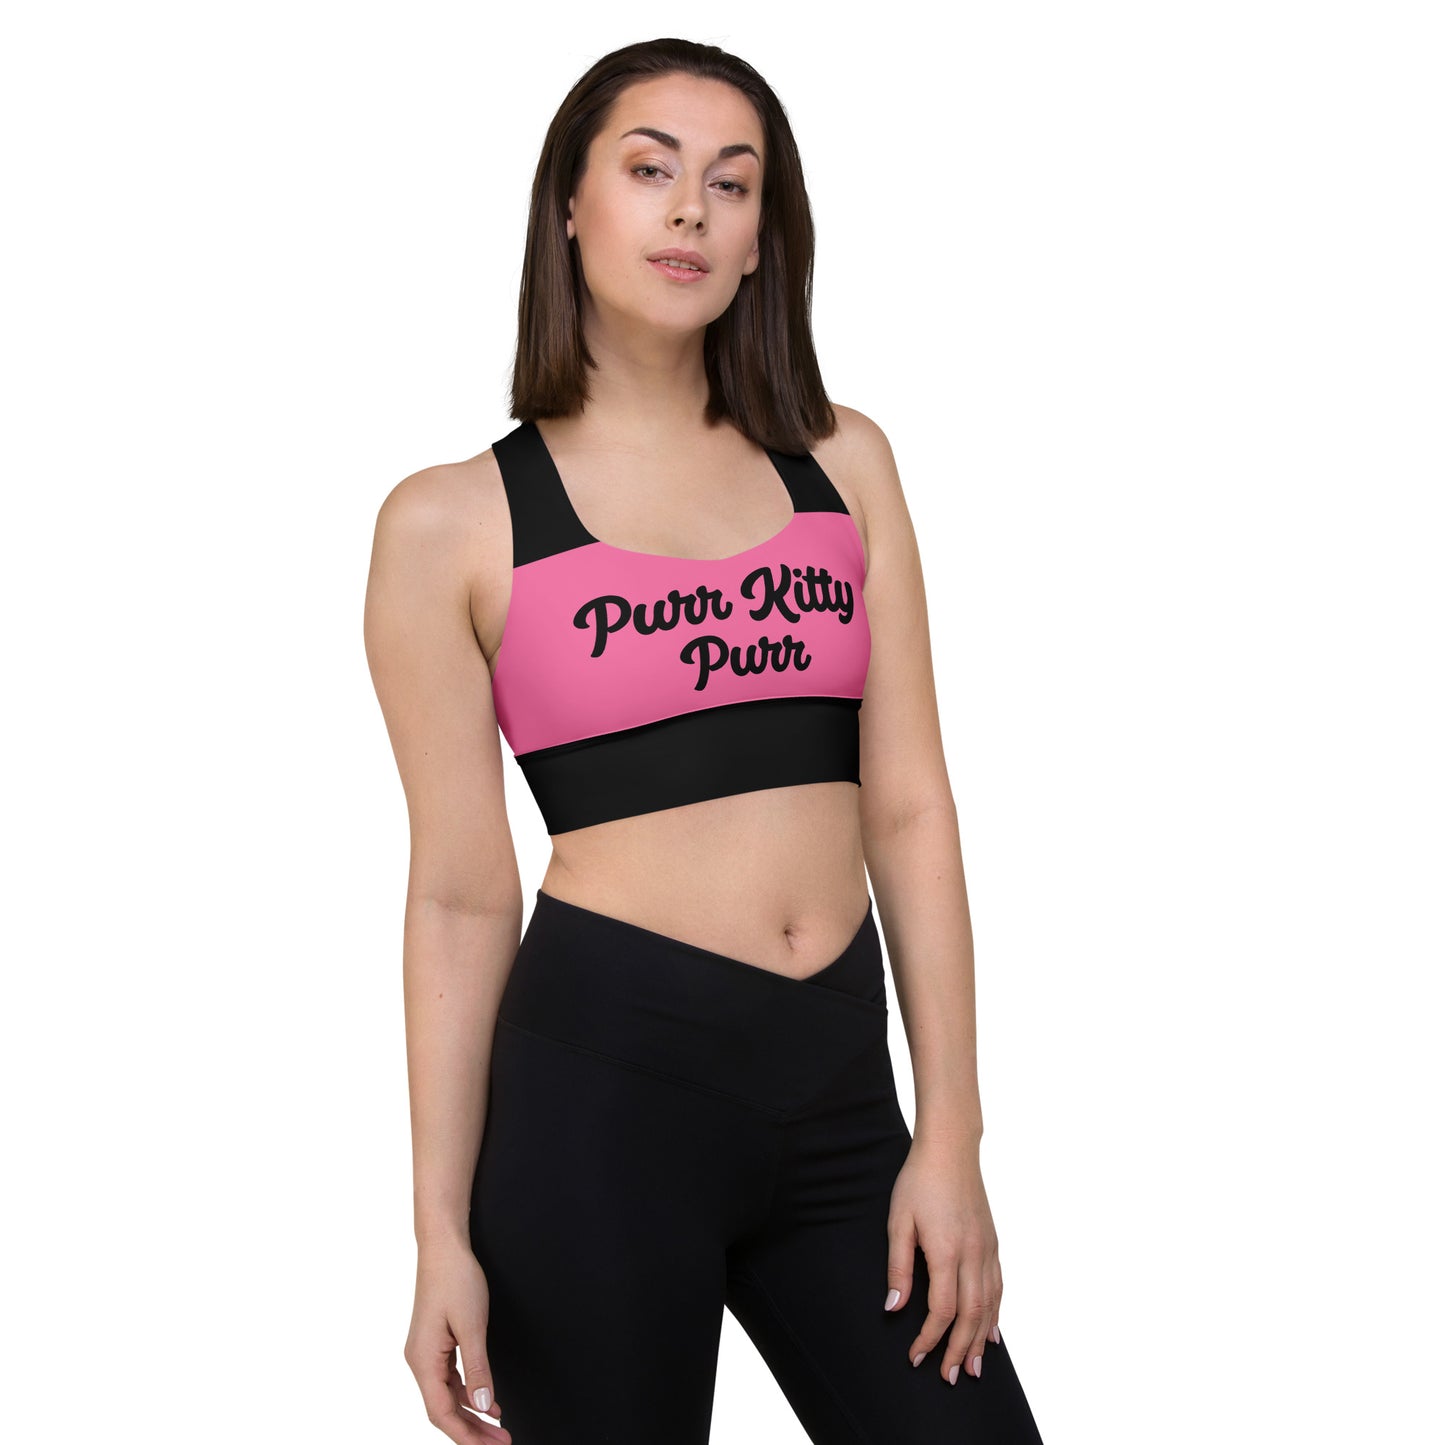 Purr Kitty-Longline sports bra